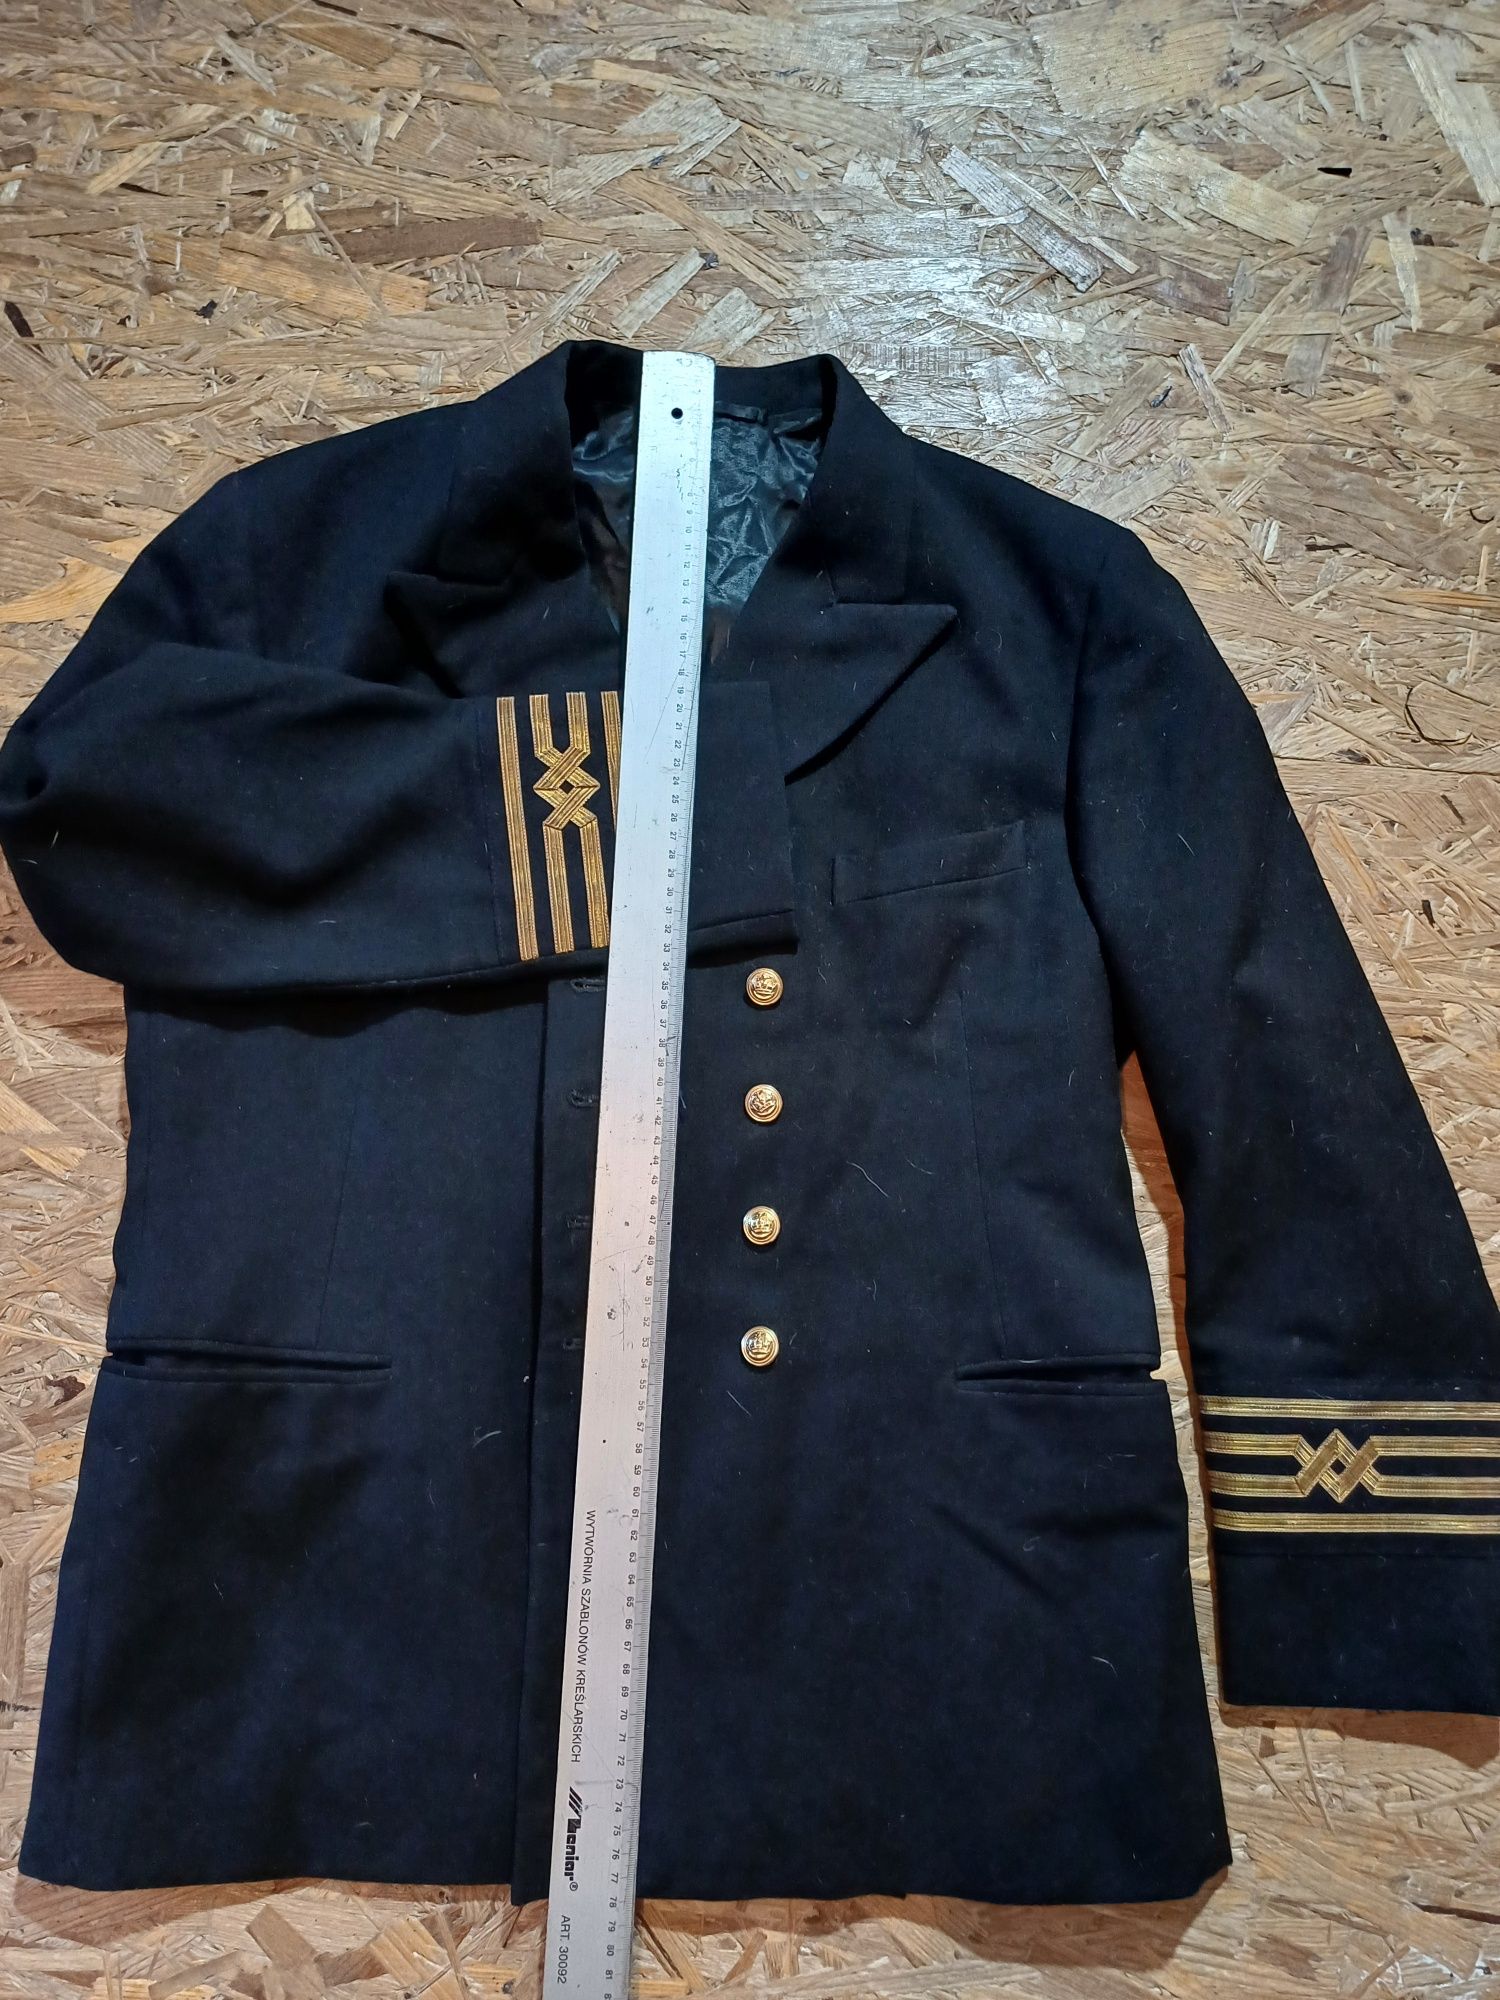 Marynarka od munduru marynarskiego